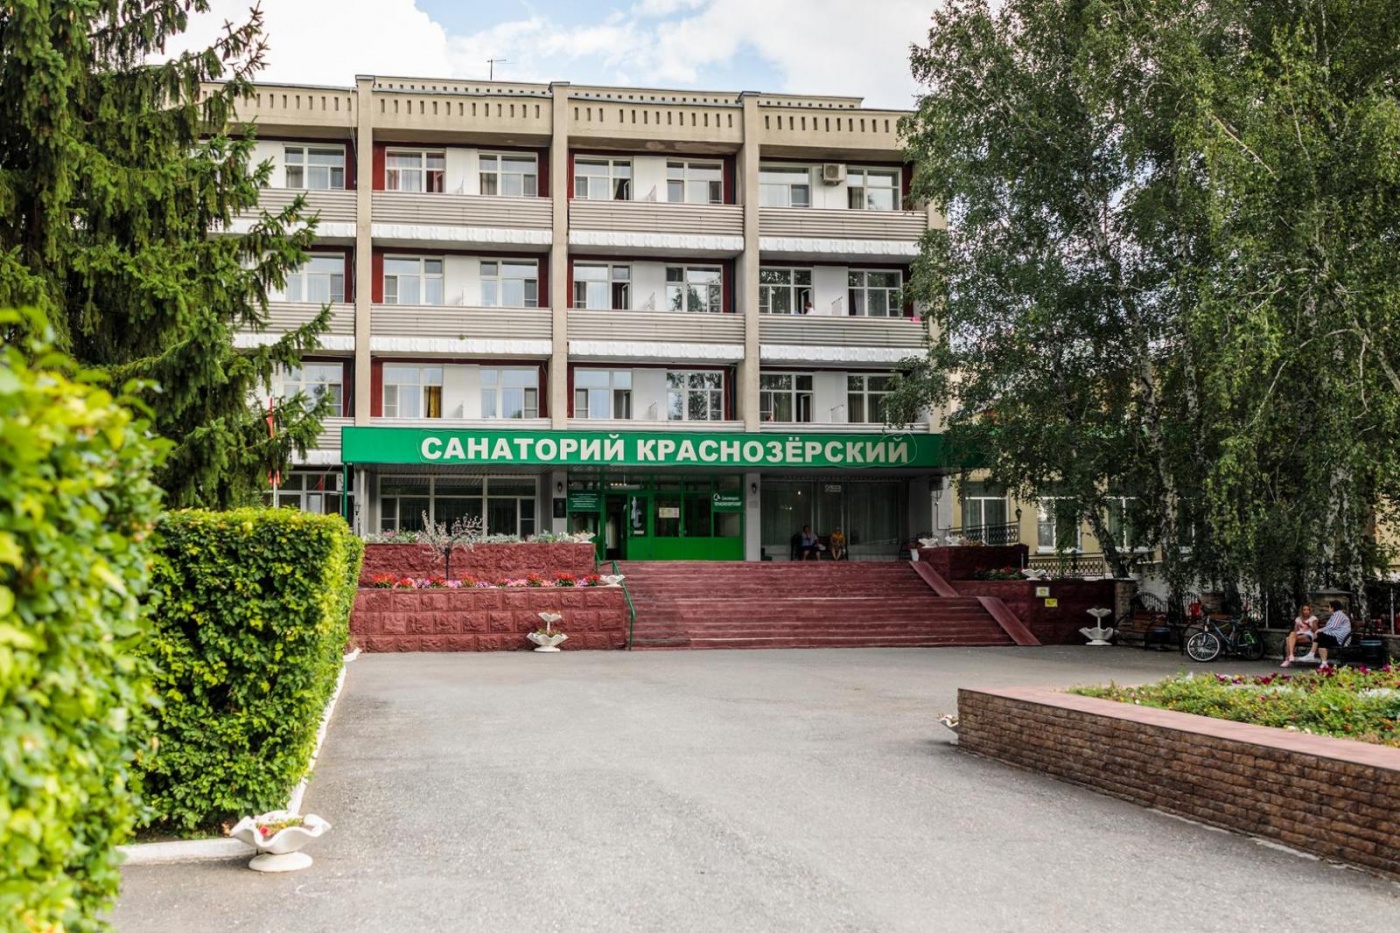  Санаторно-курортный комплекс "Краснозерский" Новосибирская область, фото 1